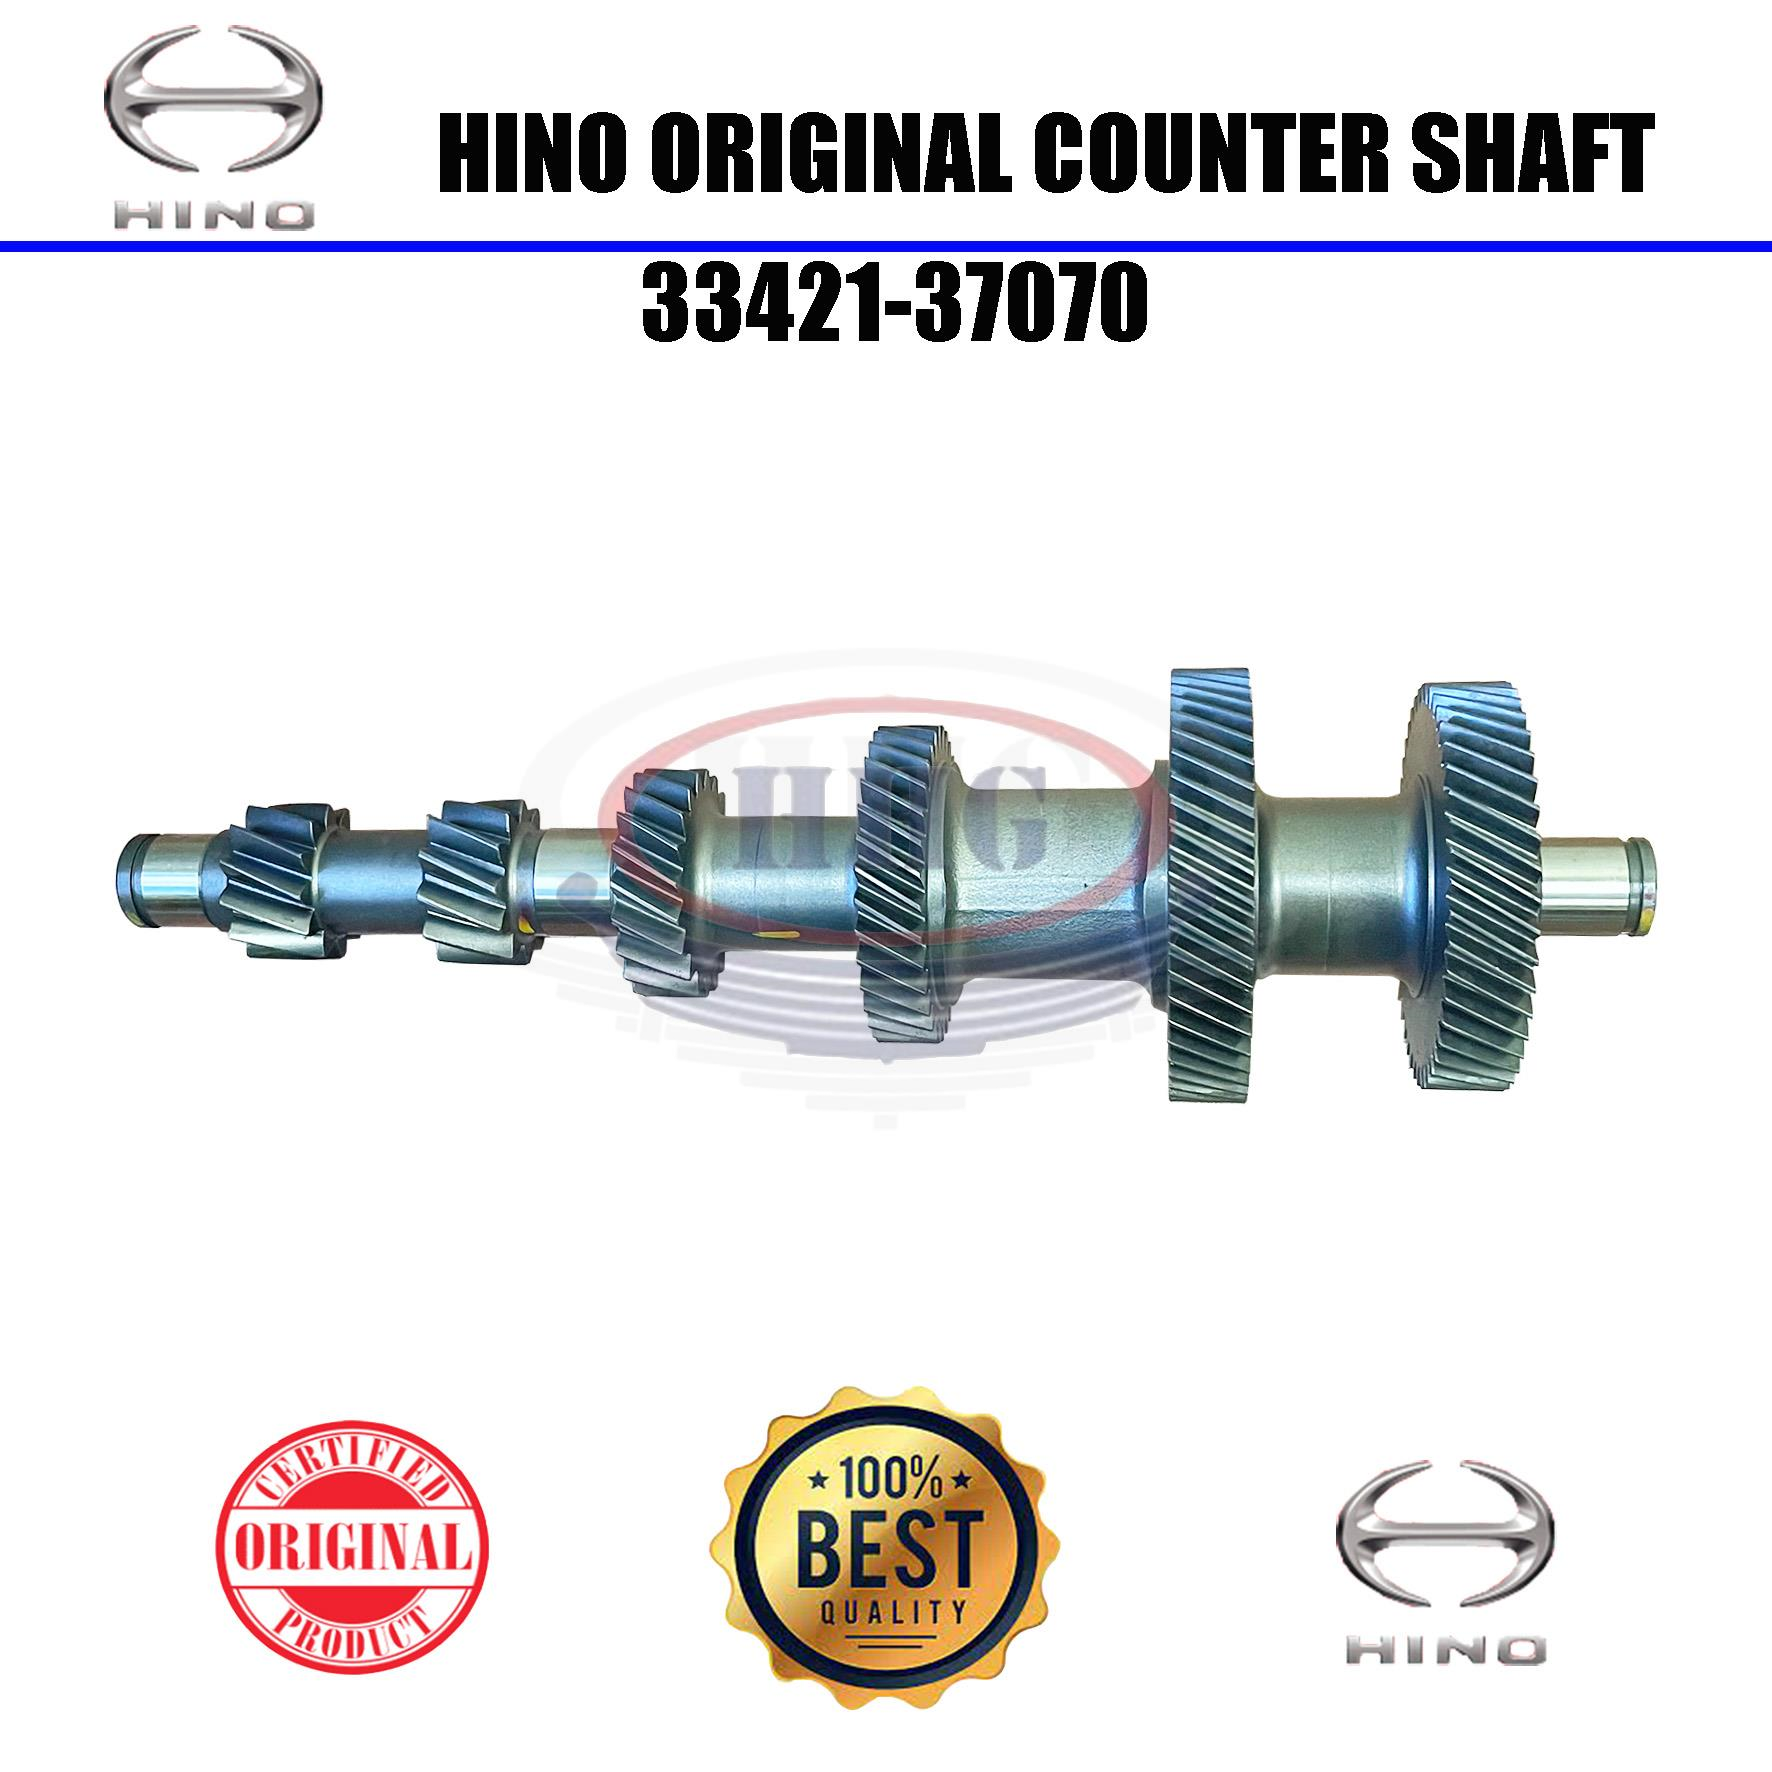 Hino Original Dutro XZU404 Counter Shaft (33421-37070)